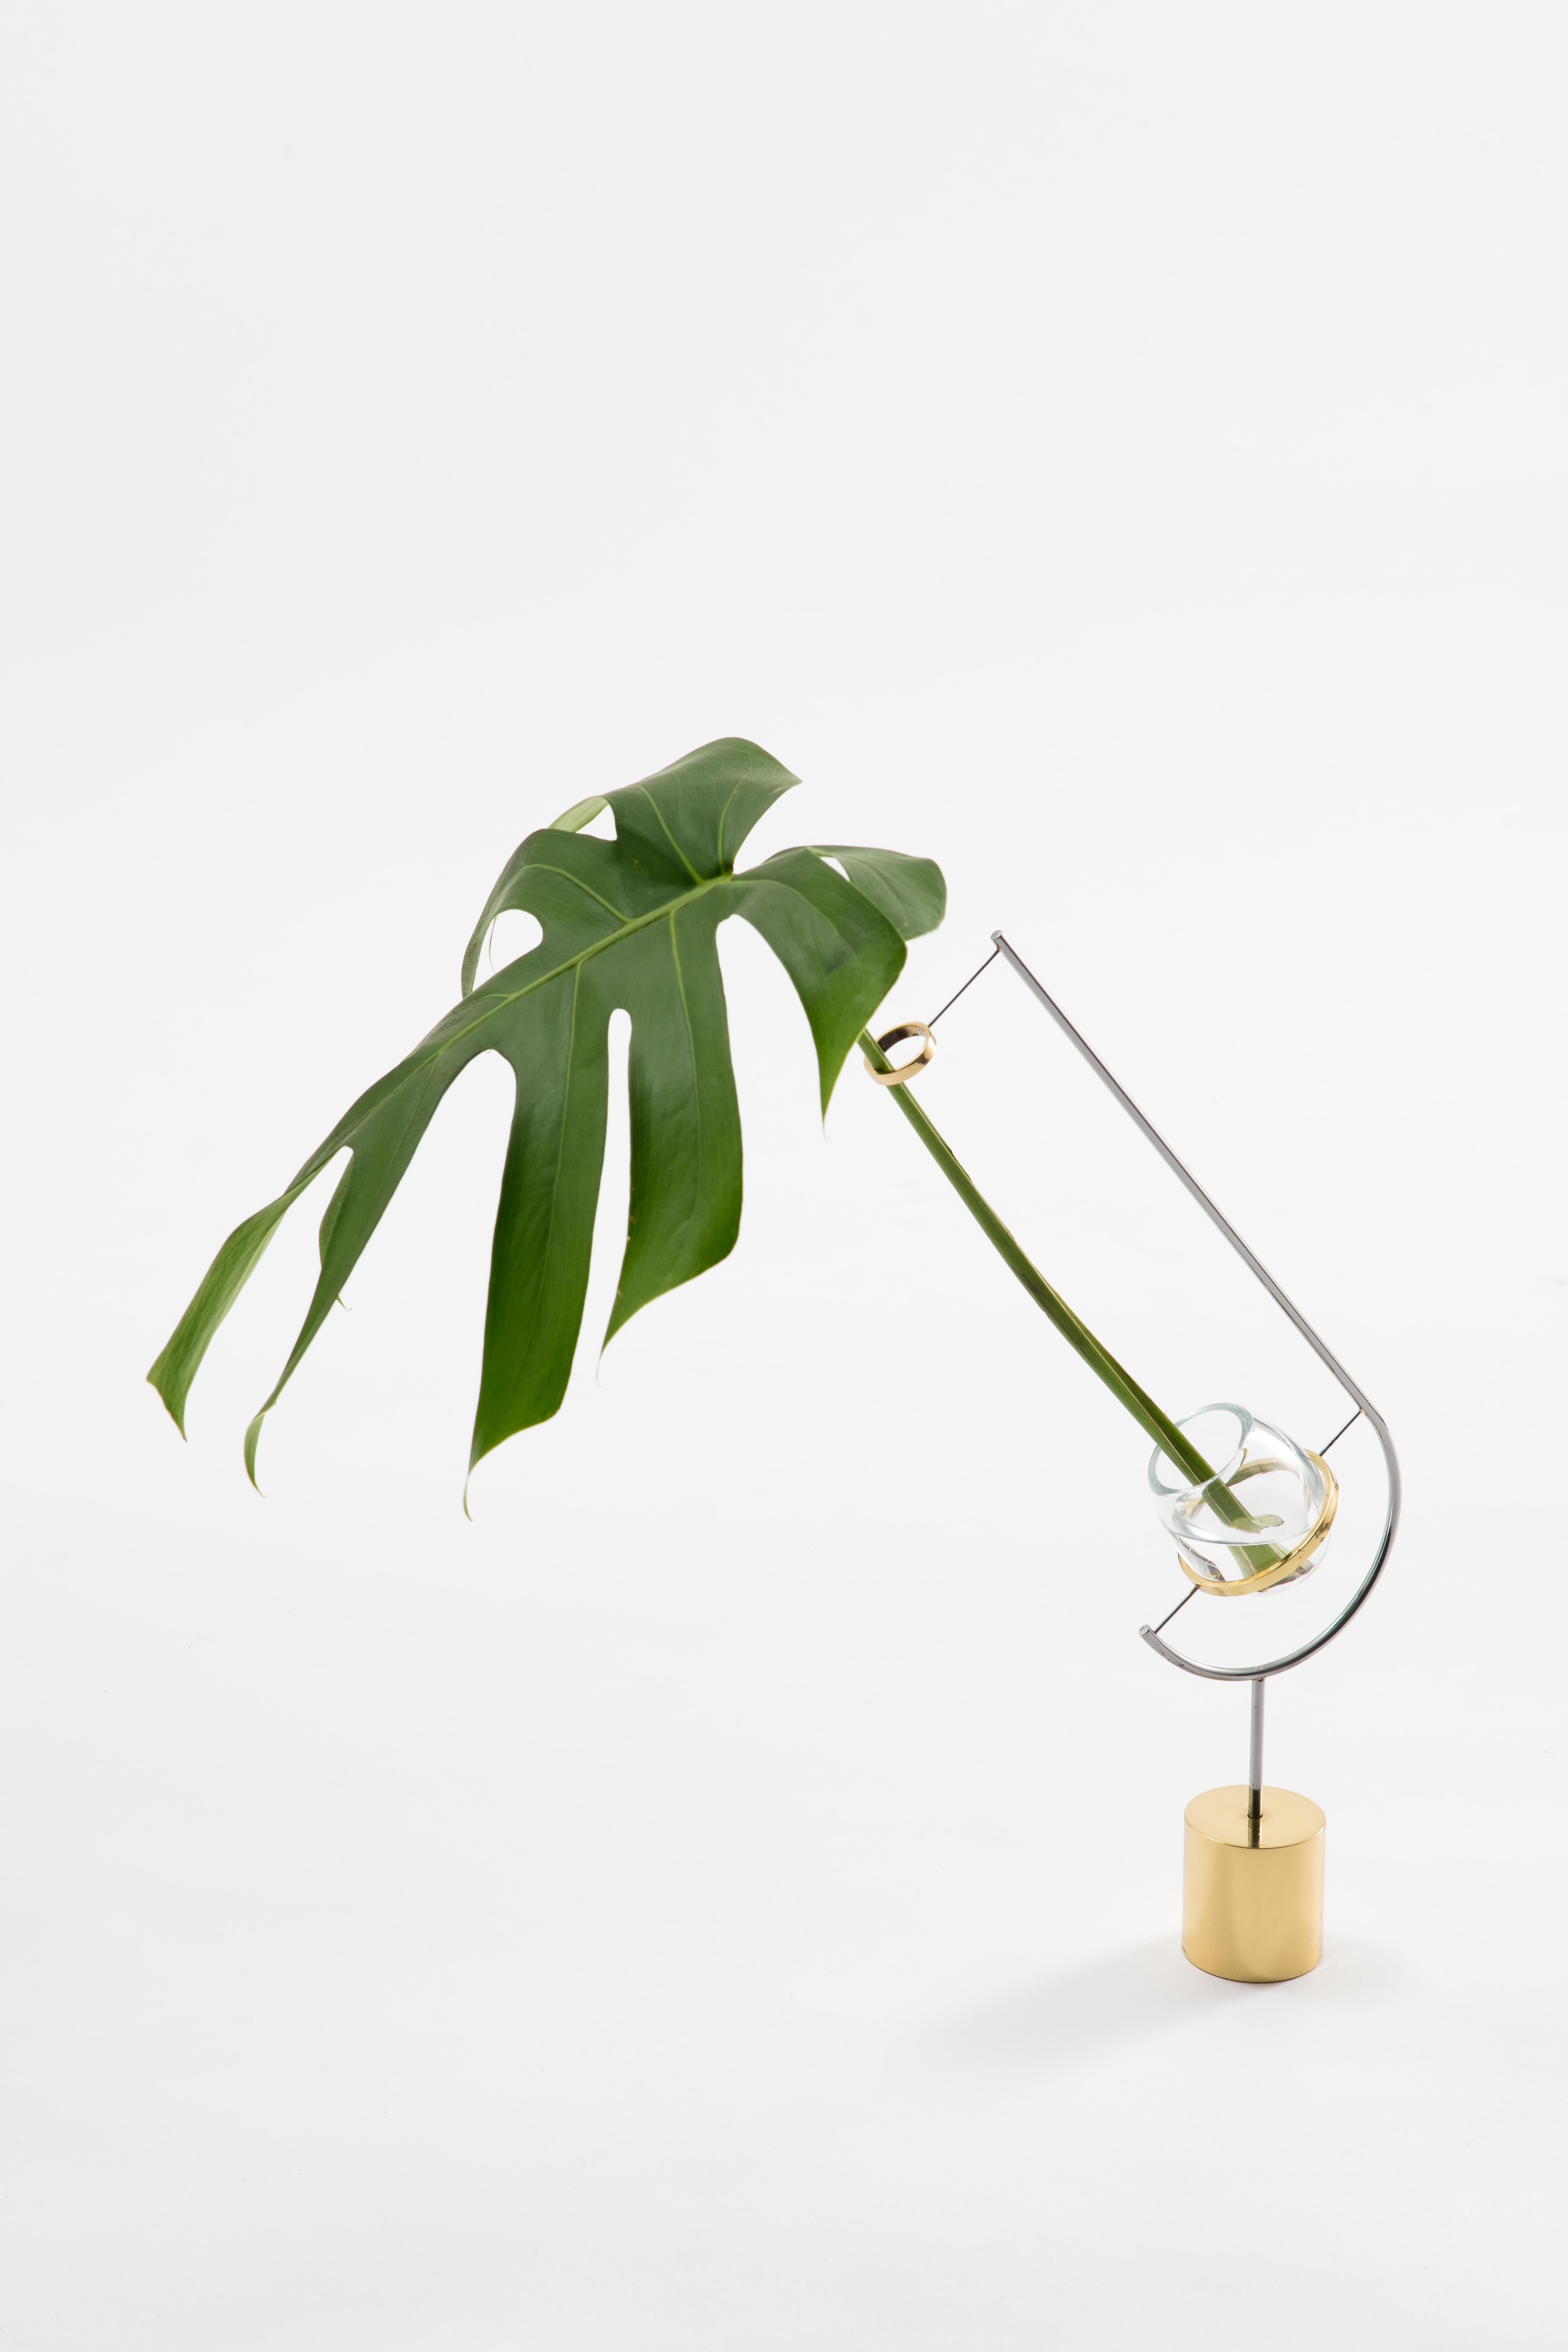 Die Vase V3 - Monstera von Paulo Goldstein, brasilianisches zeitgenössisches Design, gehört zu einer Serie von Vasen, die durch die Beobachtung der natürlichen Linien der darin enthaltenen Blumen und Blätter inspiriert wurden. Die Linien der Vasen